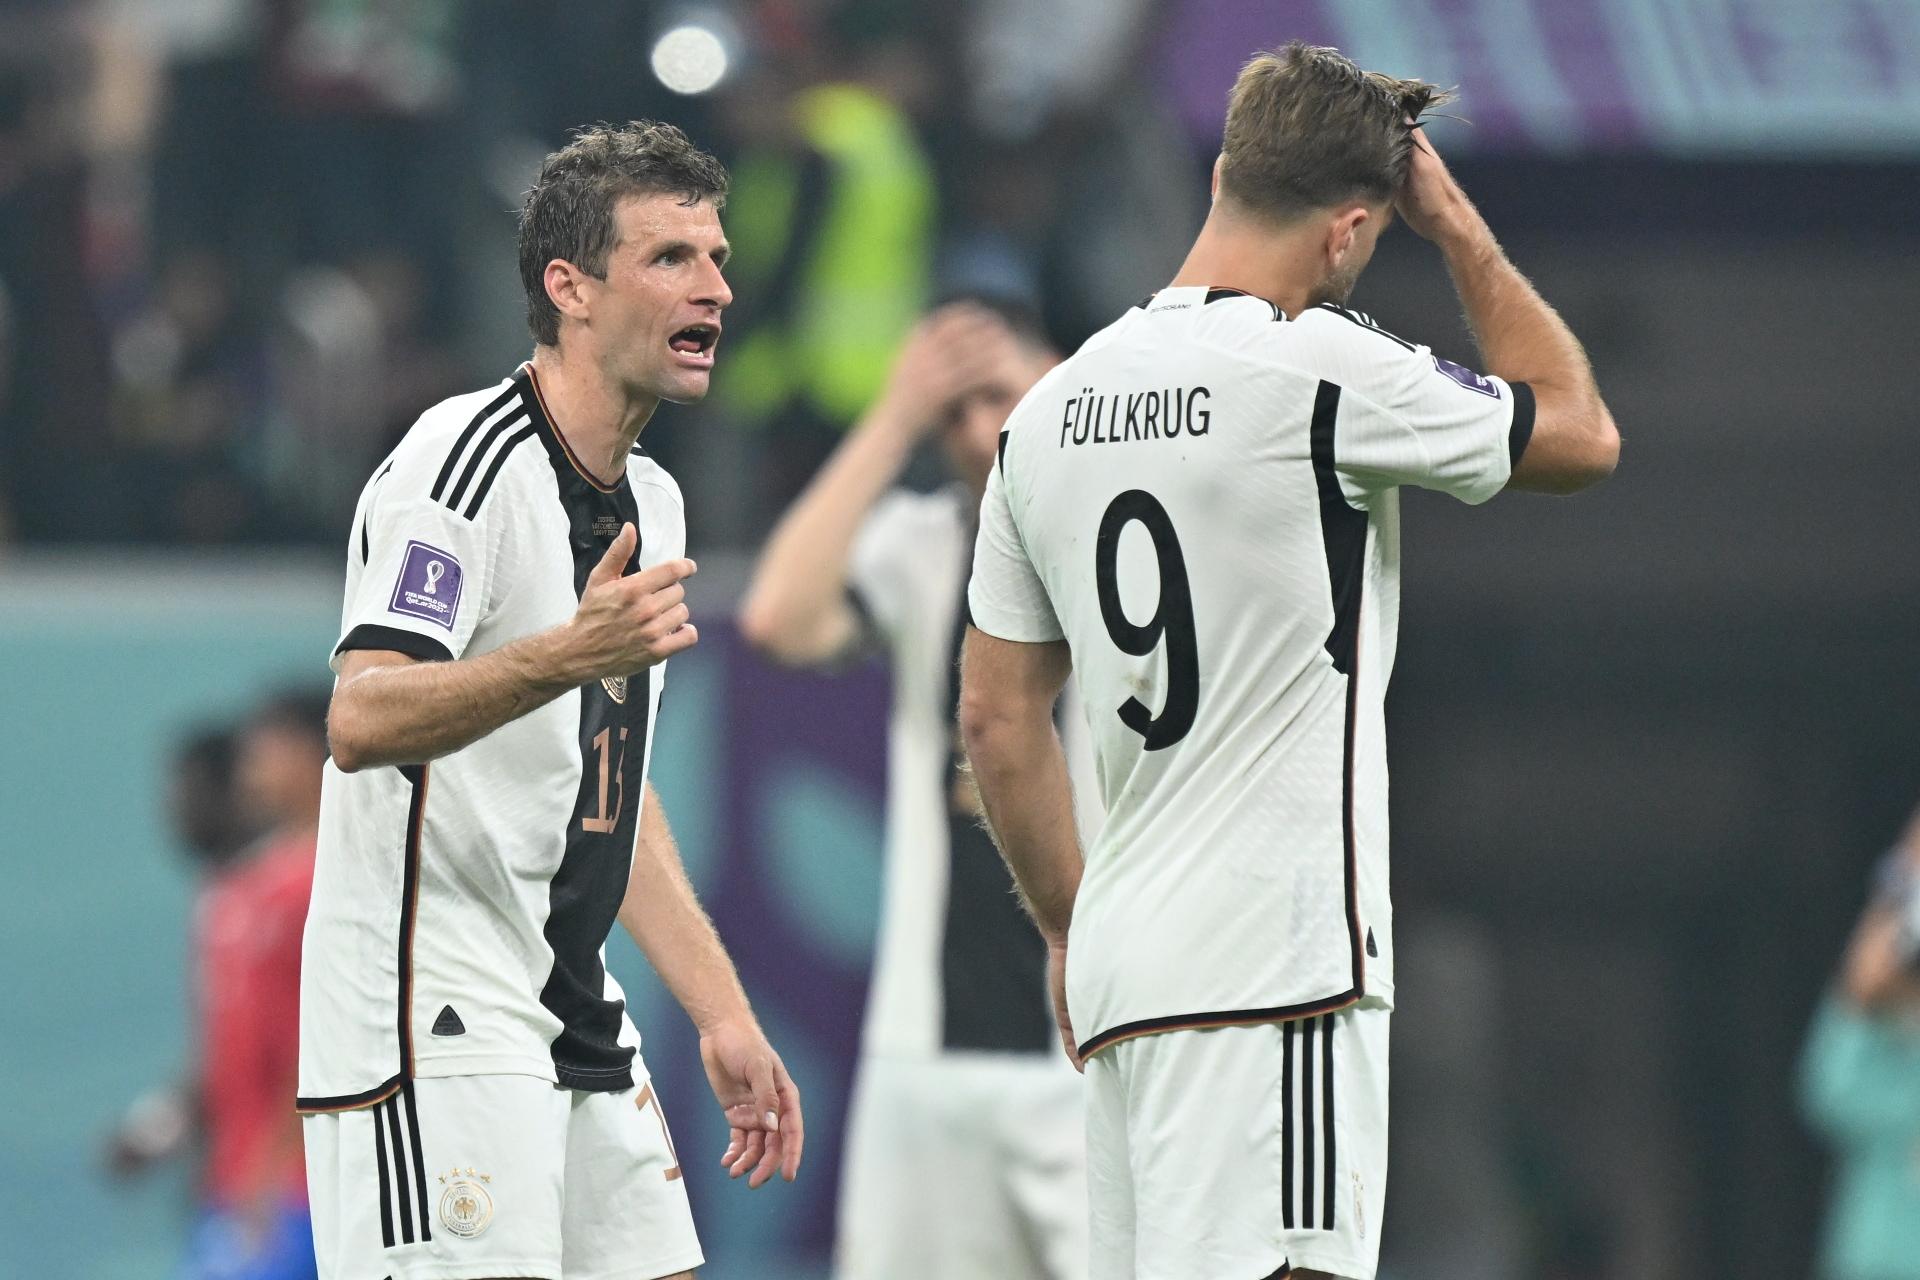 Jornal alemão detona queda na Copa: 'Agora somos um anão do futebol